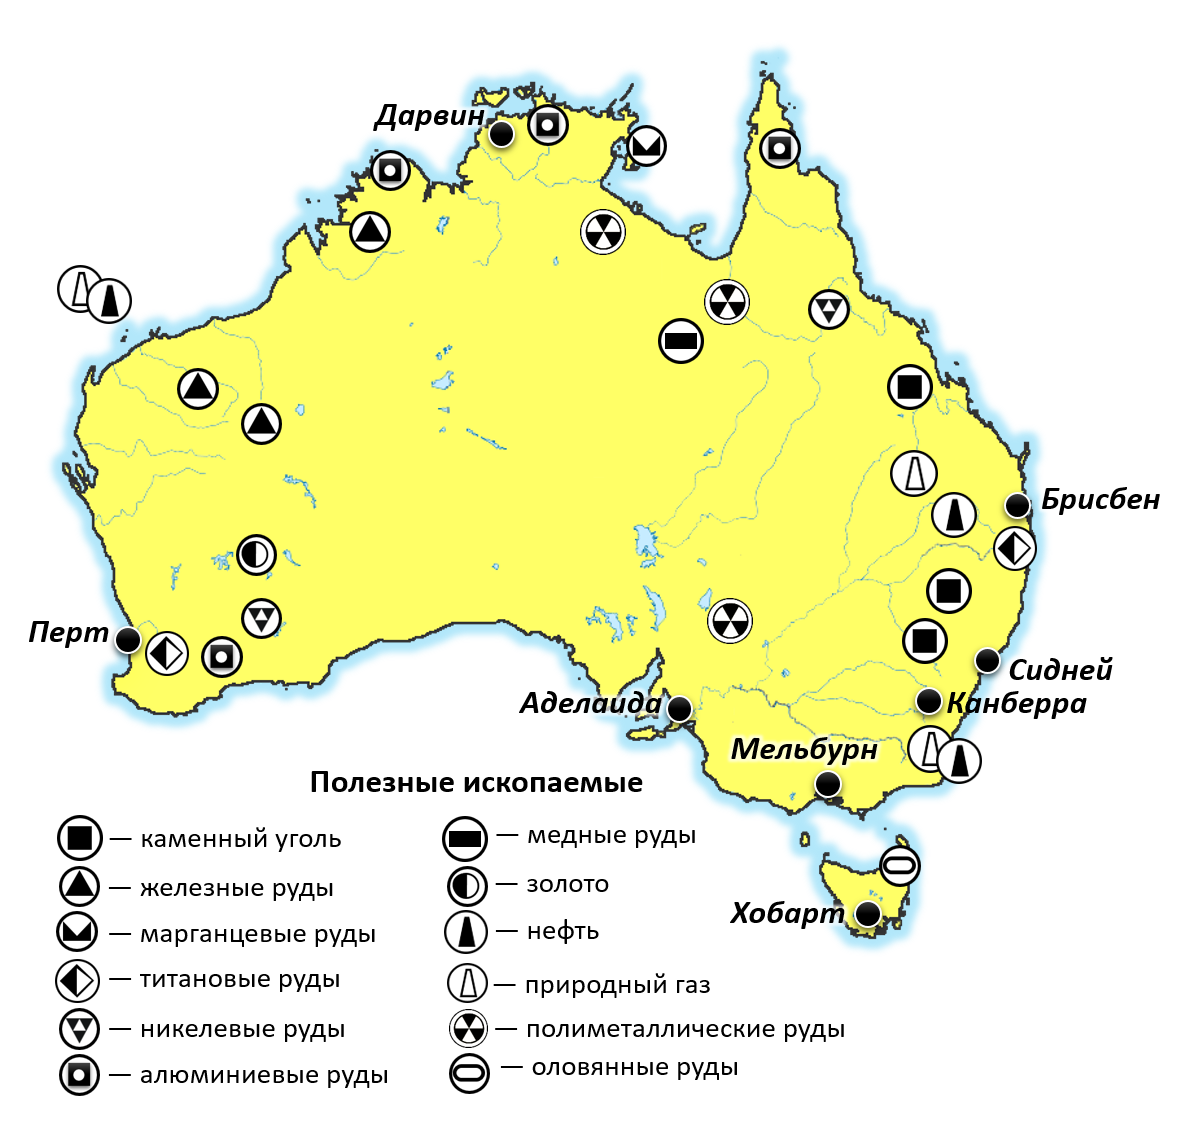 Австралия на мировом рынке. Месторождения полезных ископаемых в Австралии на карте. Месторождения полезных ископаемых Австралии на контурной карте. Полезные ископаемые Австралии на карте. Месторождение железной руды в Австралии на карте.